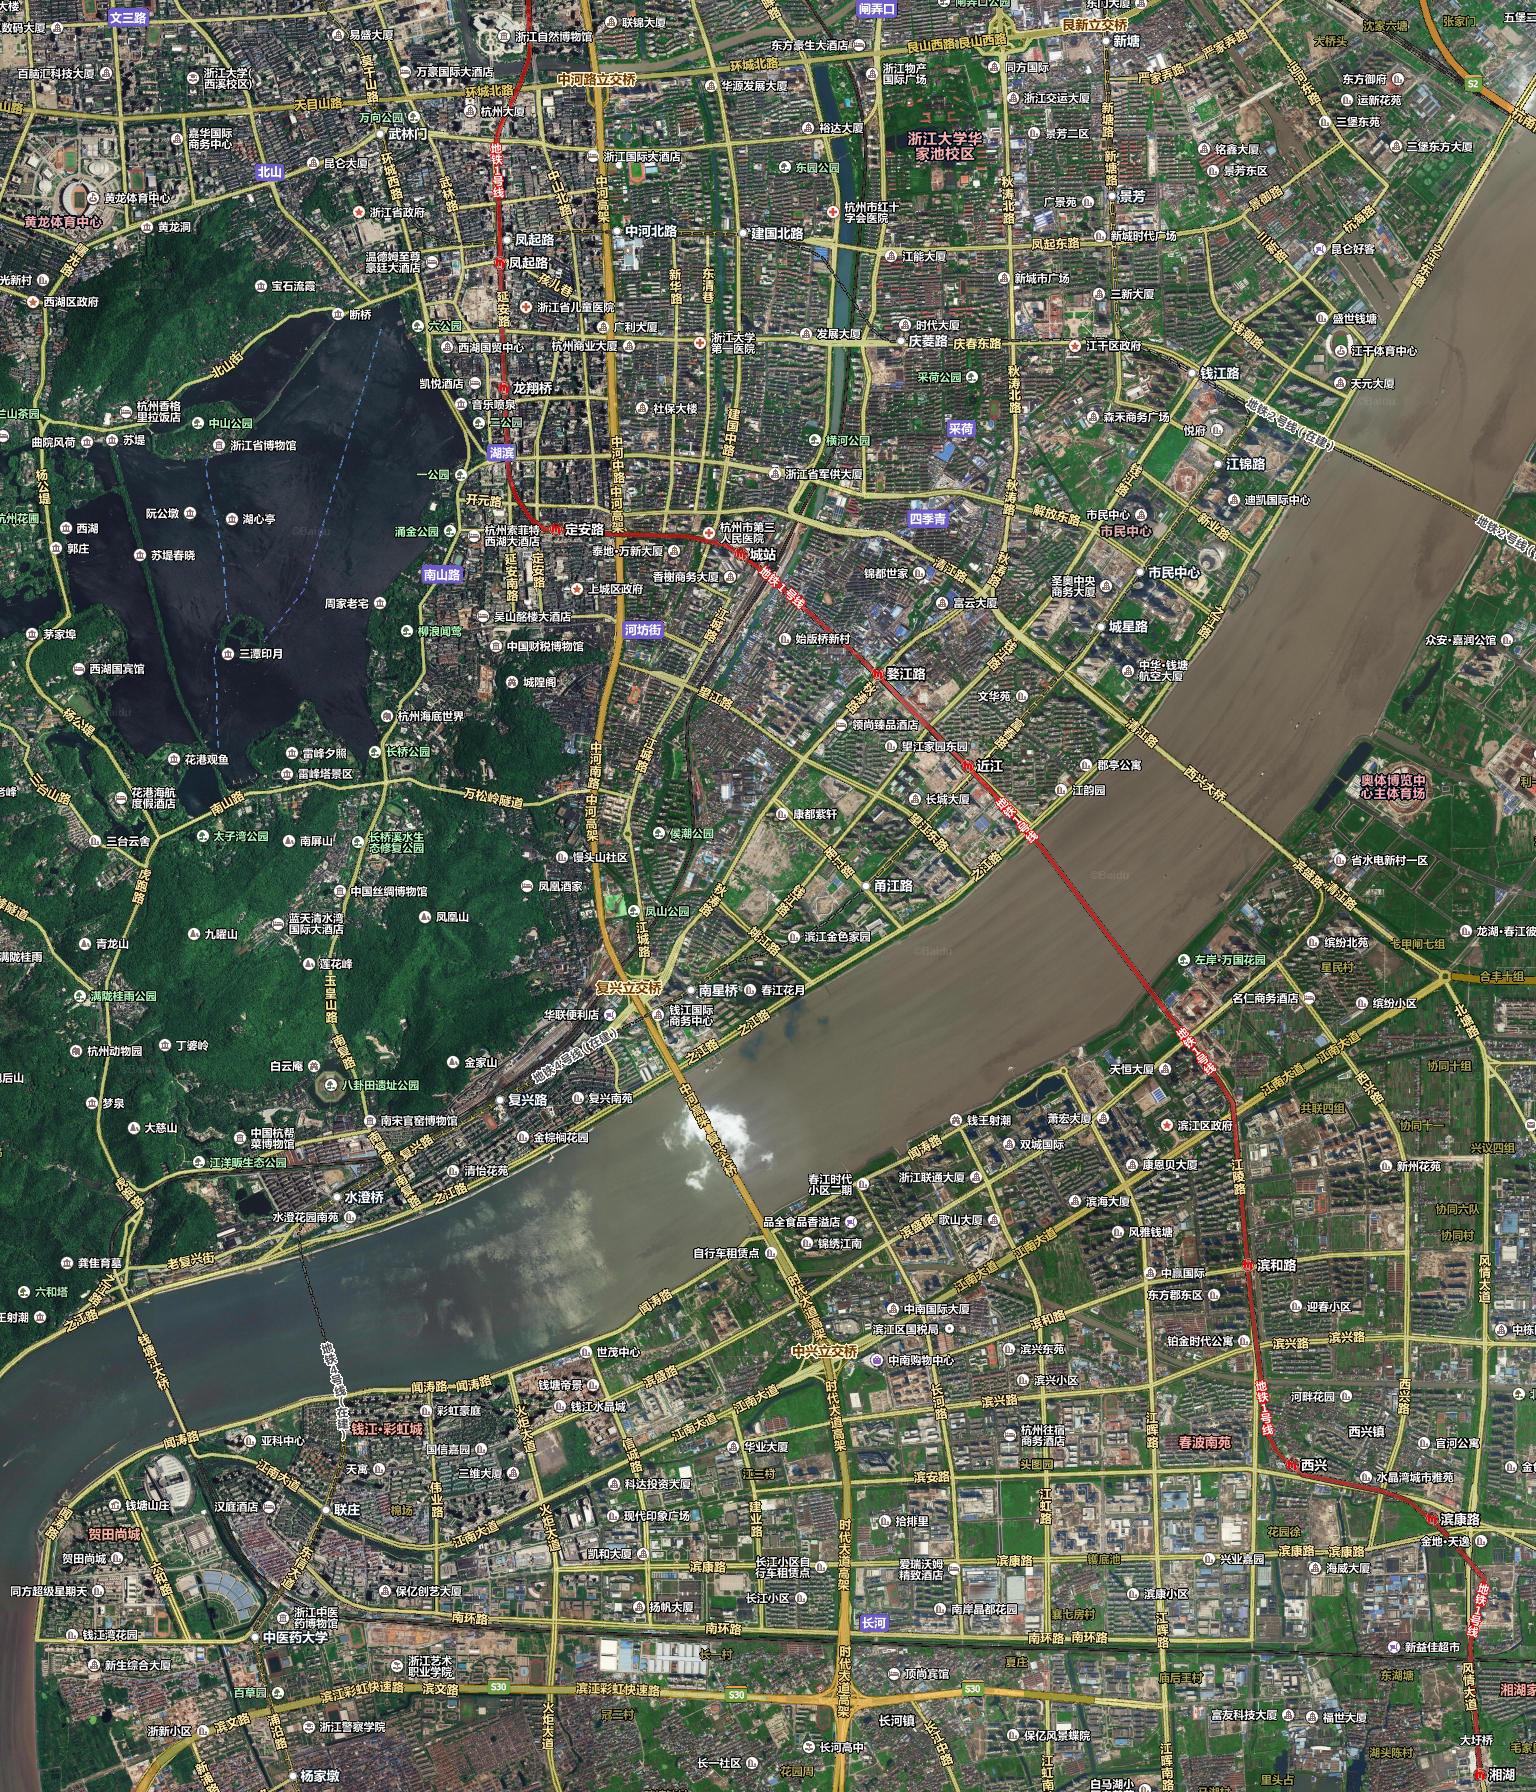 Google地球航空、卫星照片全球大规模更新-Google Maps,谷歌地图,Google Earth,谷歌地球,航空照片,卫星照片 ——快科技(原驱动之家)--全球最新科技资讯专业发布平台